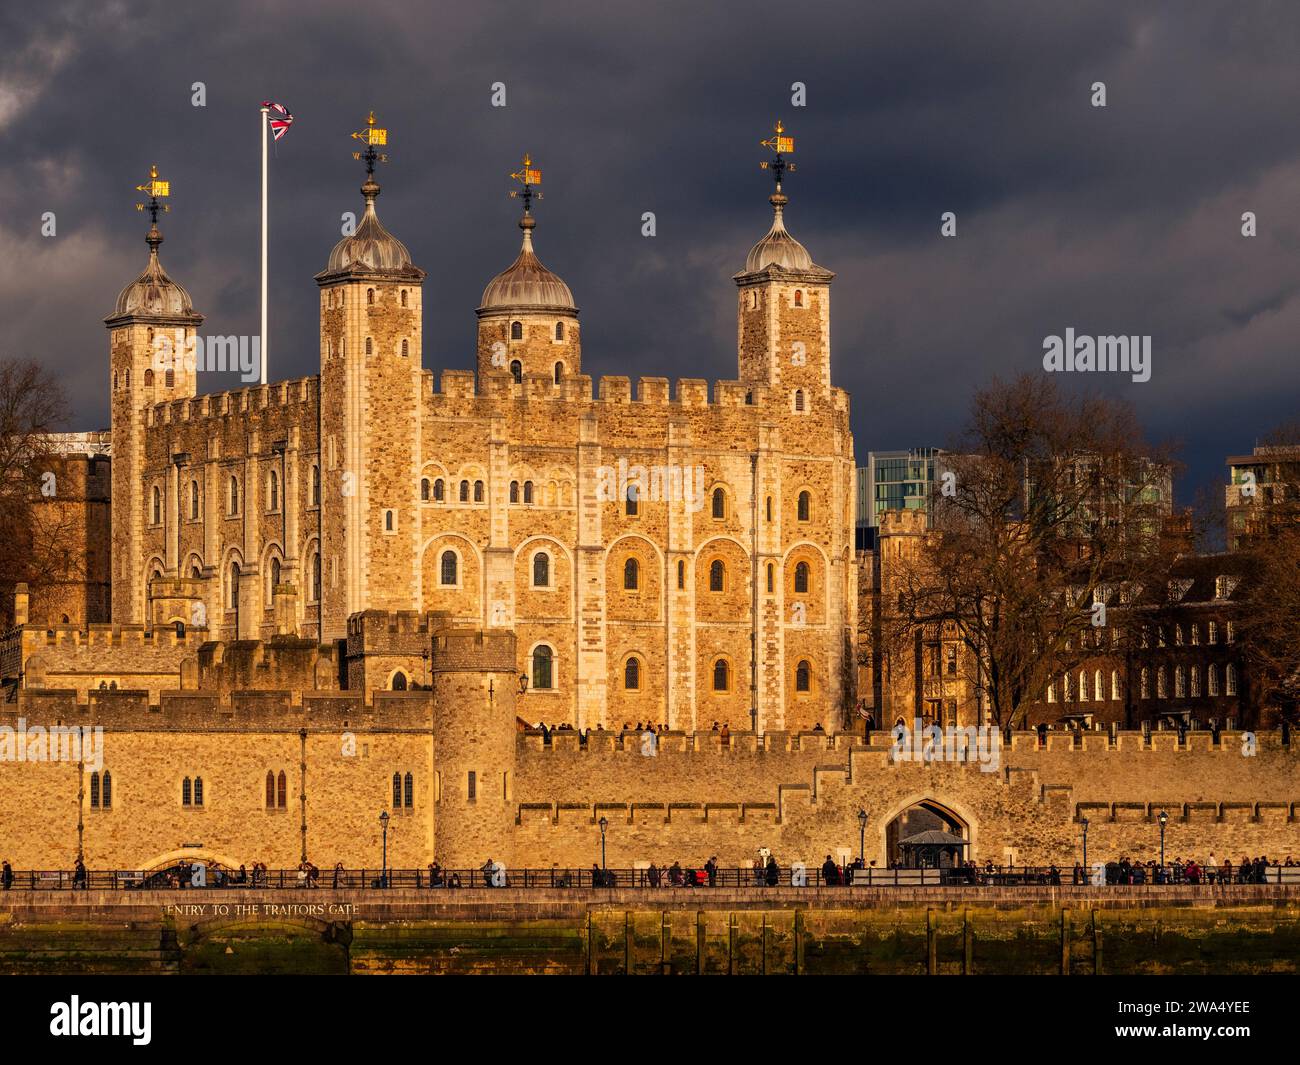 La Torre Bianca, la Torre di Londra, il Castello storico, sulle rive del Tamigi, Londra, Inghilterra, Regno Unito, Gran Bretagna. Foto Stock